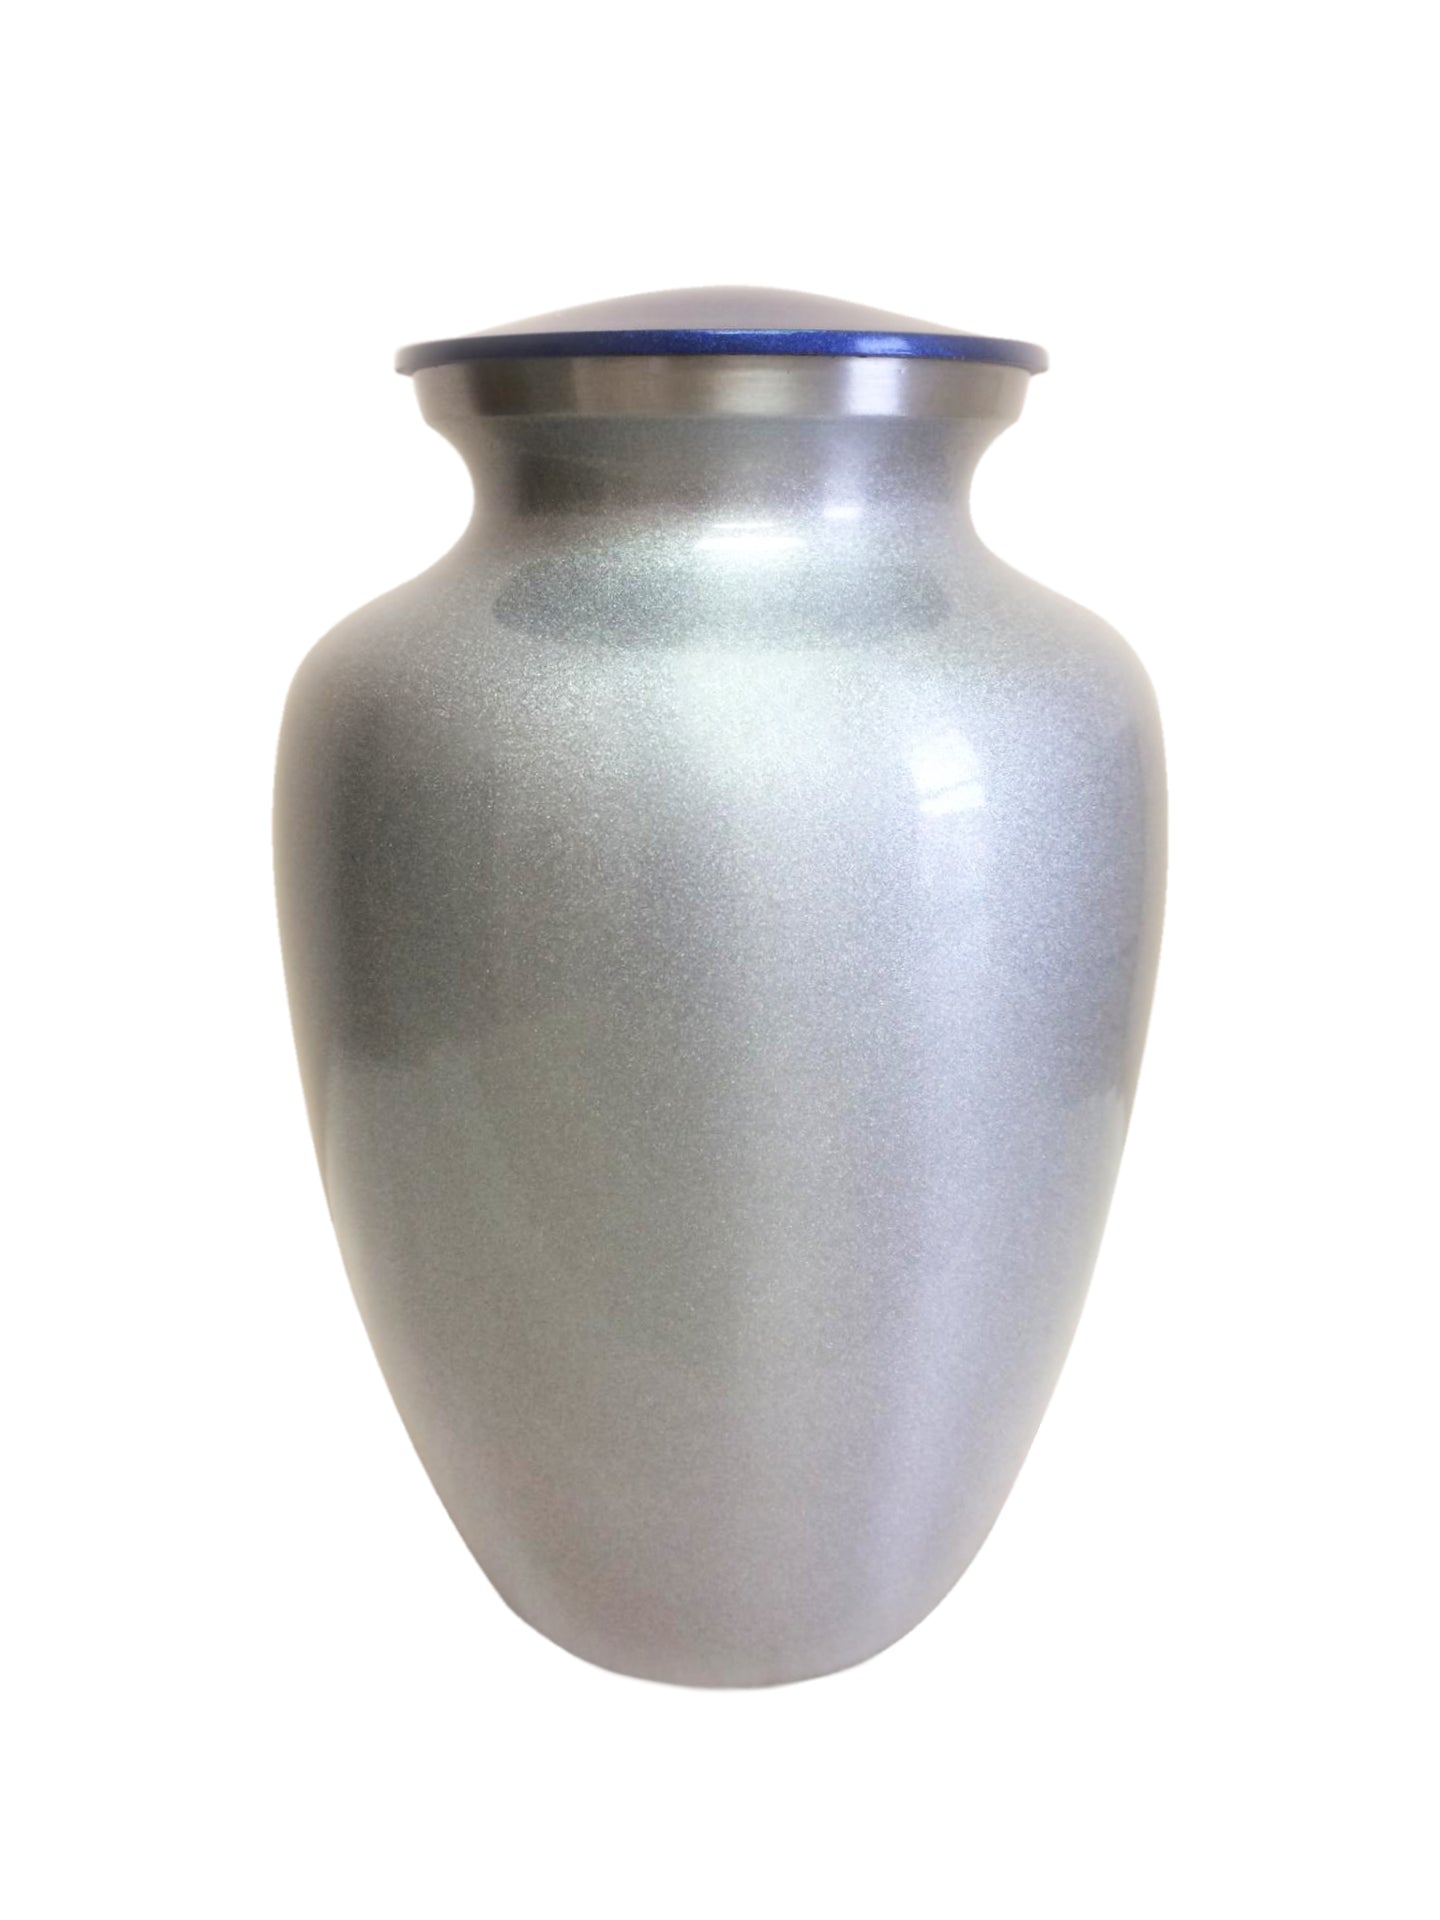 Extra-large custom urn